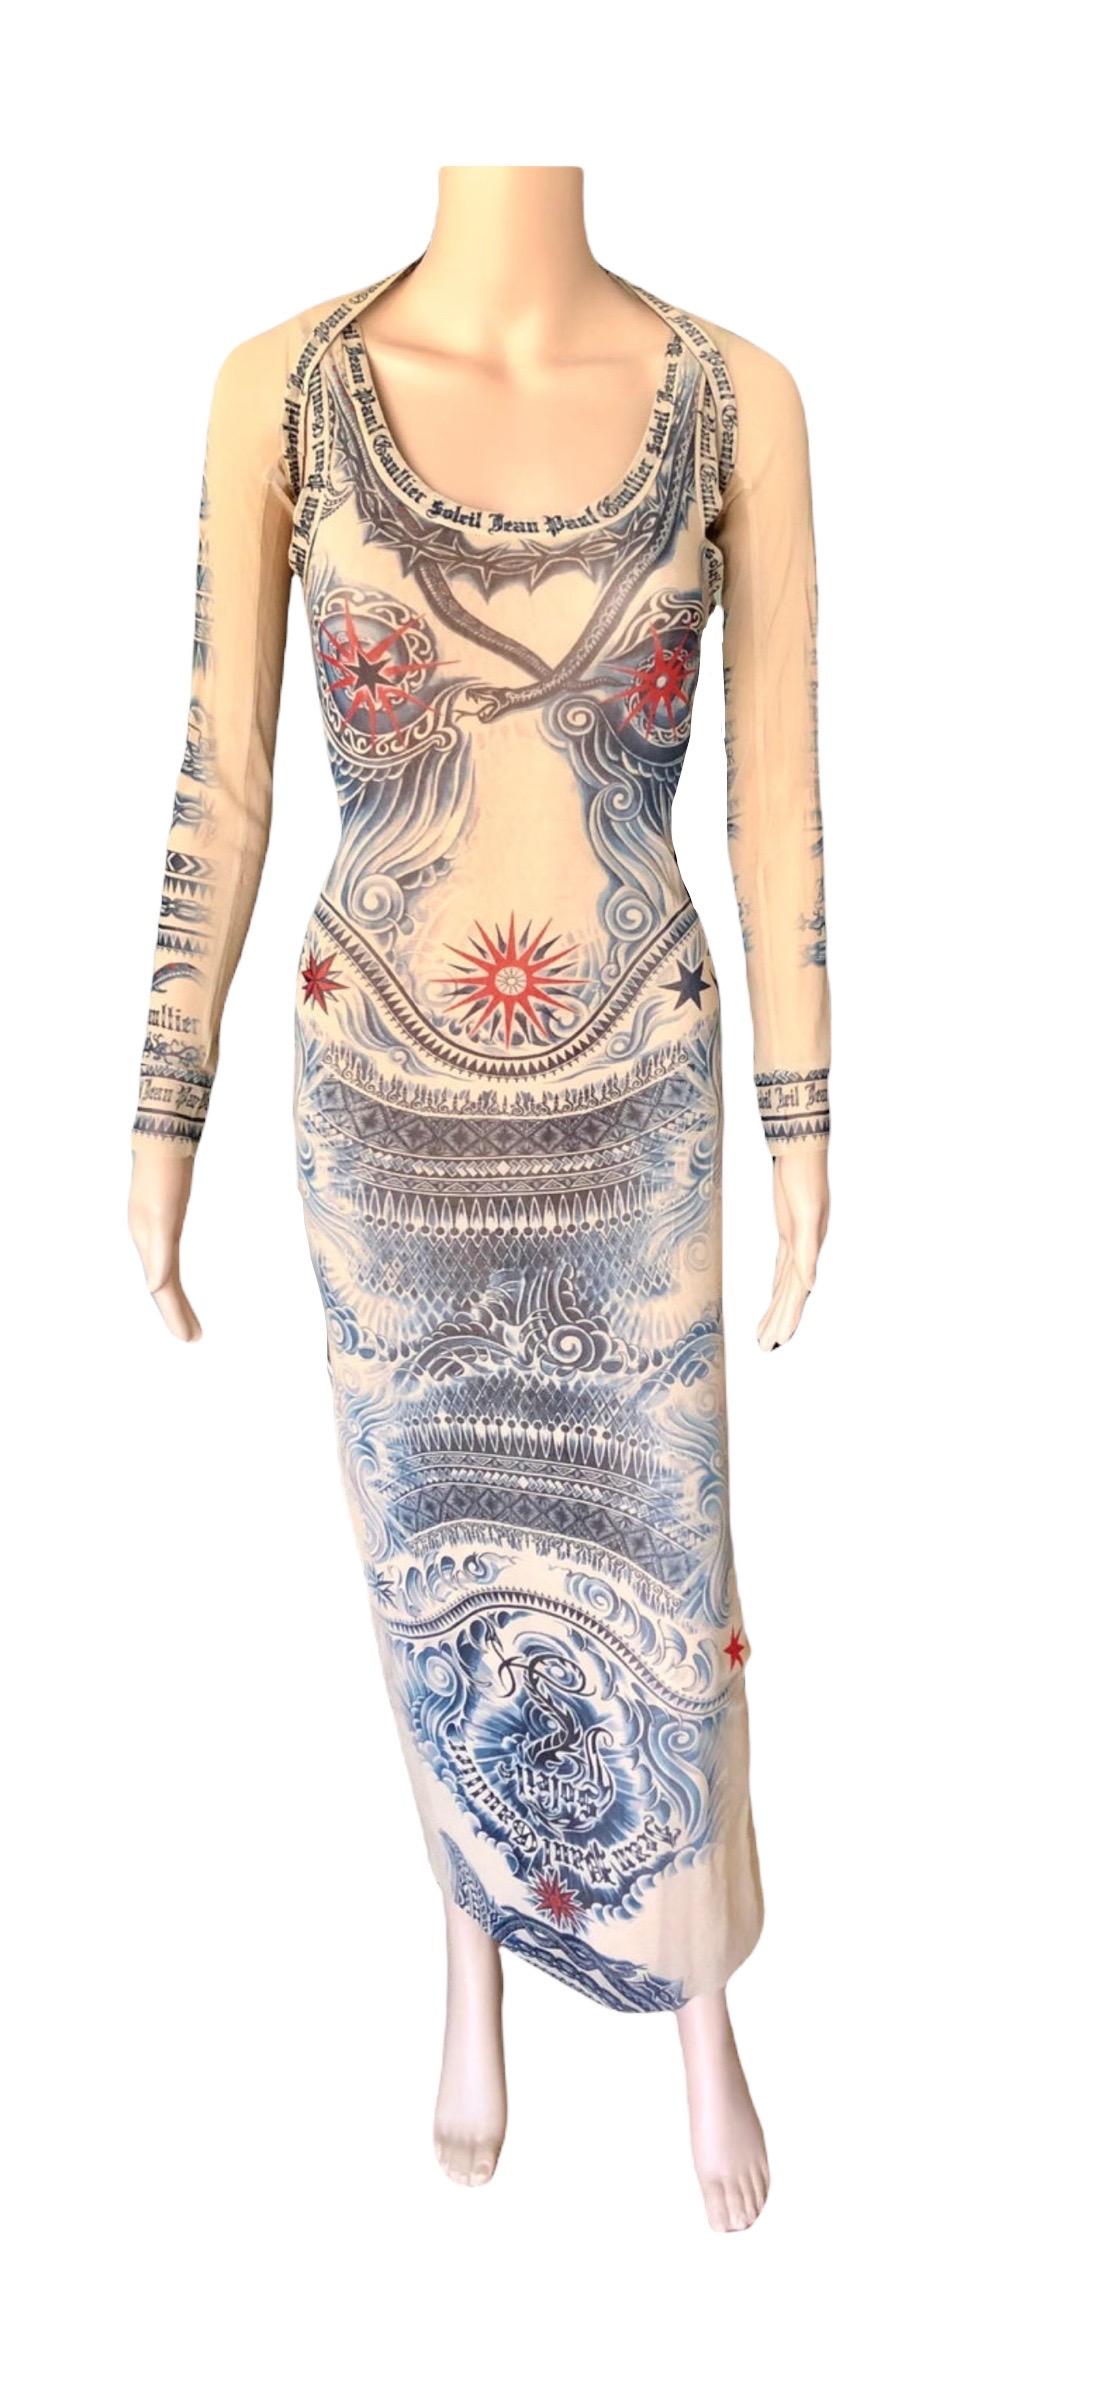 jean paul gaultier tattoo dress